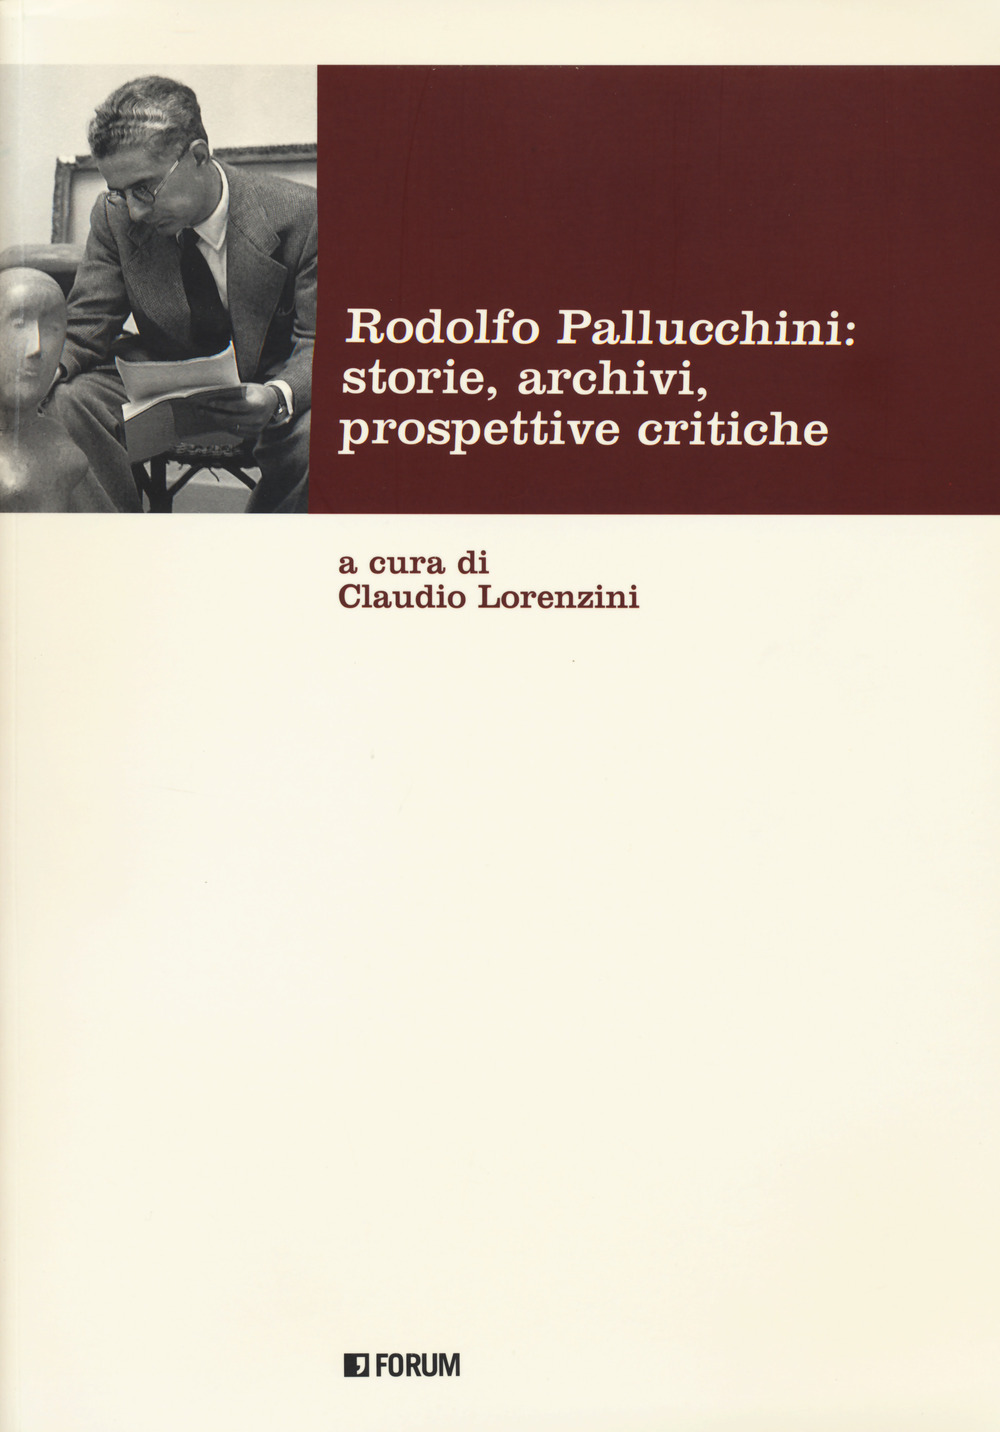 Image of Rodolfo Pallucchini: storie, archivi, prospettive critiche